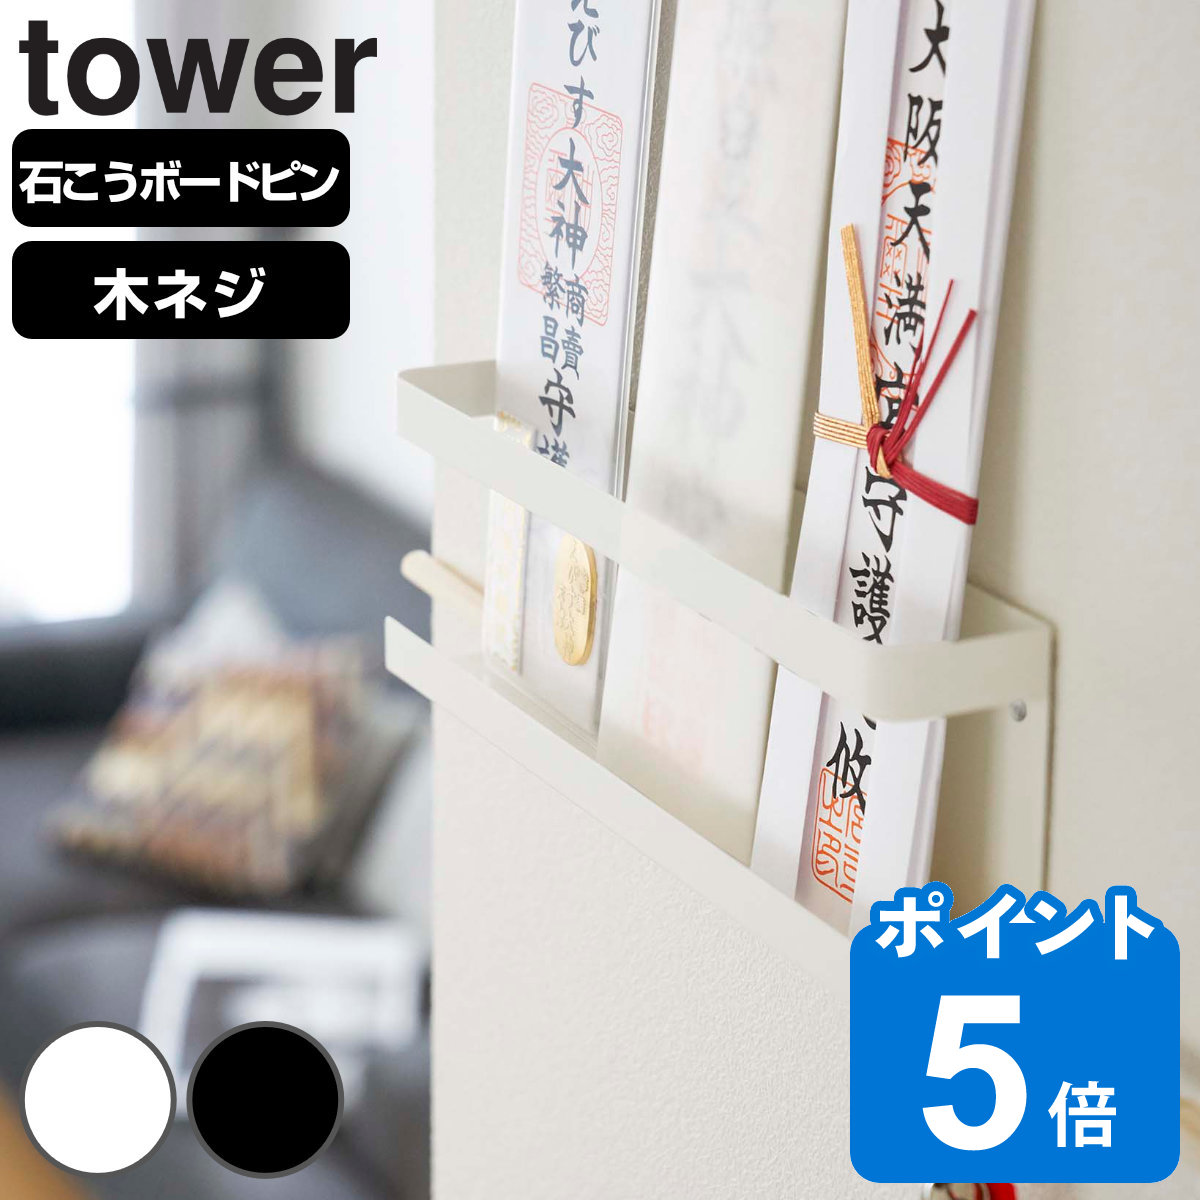 山崎実業 tower 神札ホルダー タワー